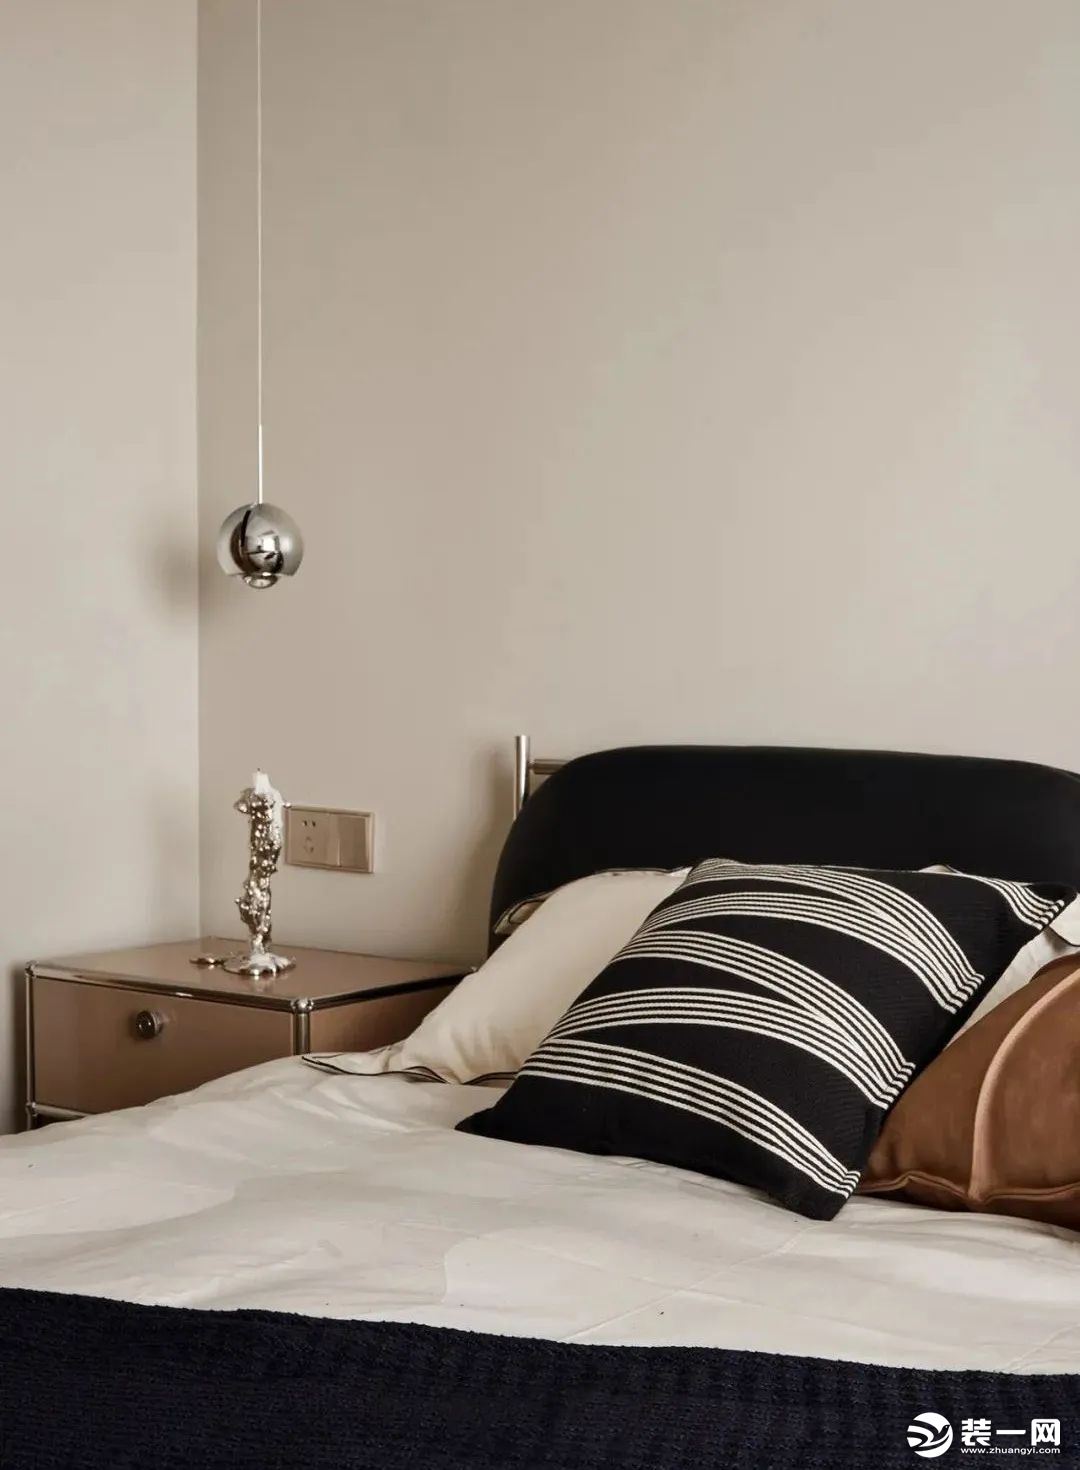 床品搭配黑白基础色调，原木质感的床头柜，加以银饰边框勾勒，和床头的小圆吊灯相呼应，简单的陈设浸润出静